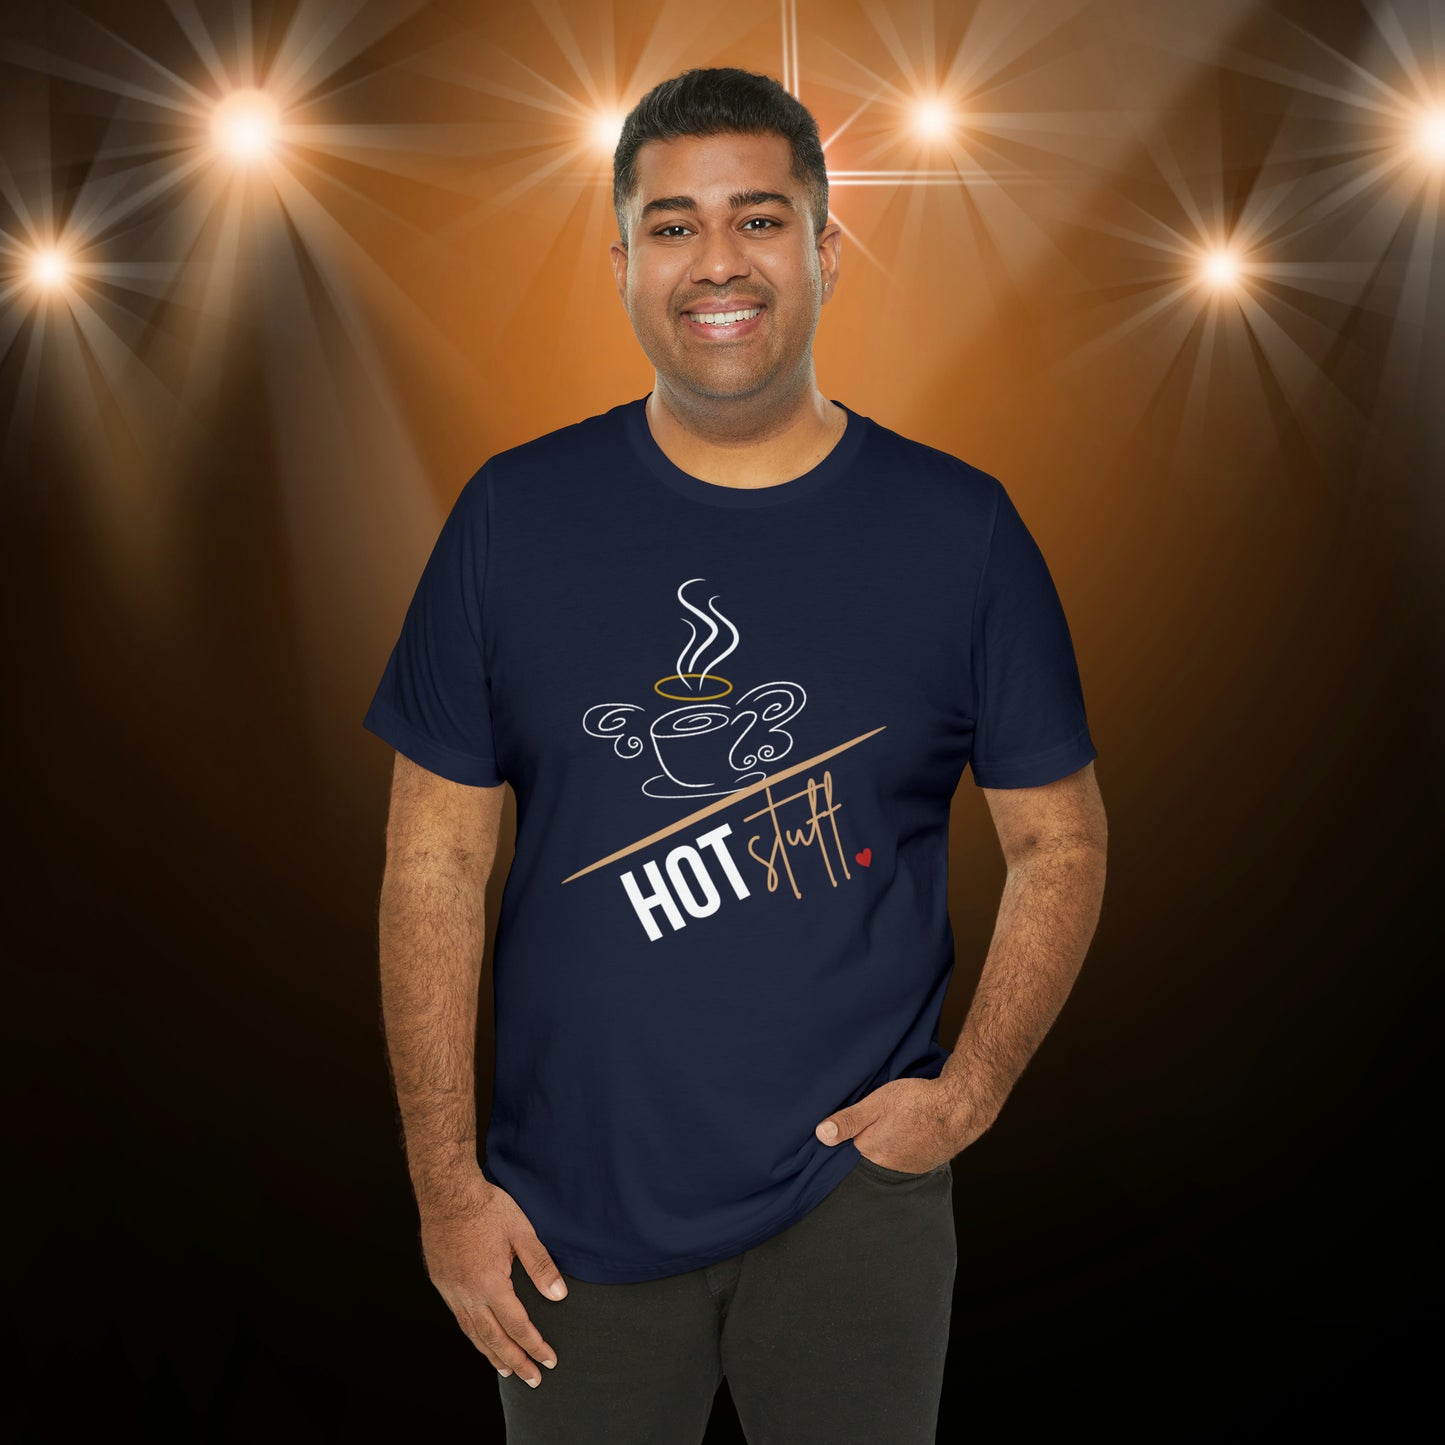 A "Hot Stuff!" Unisex T-shirt